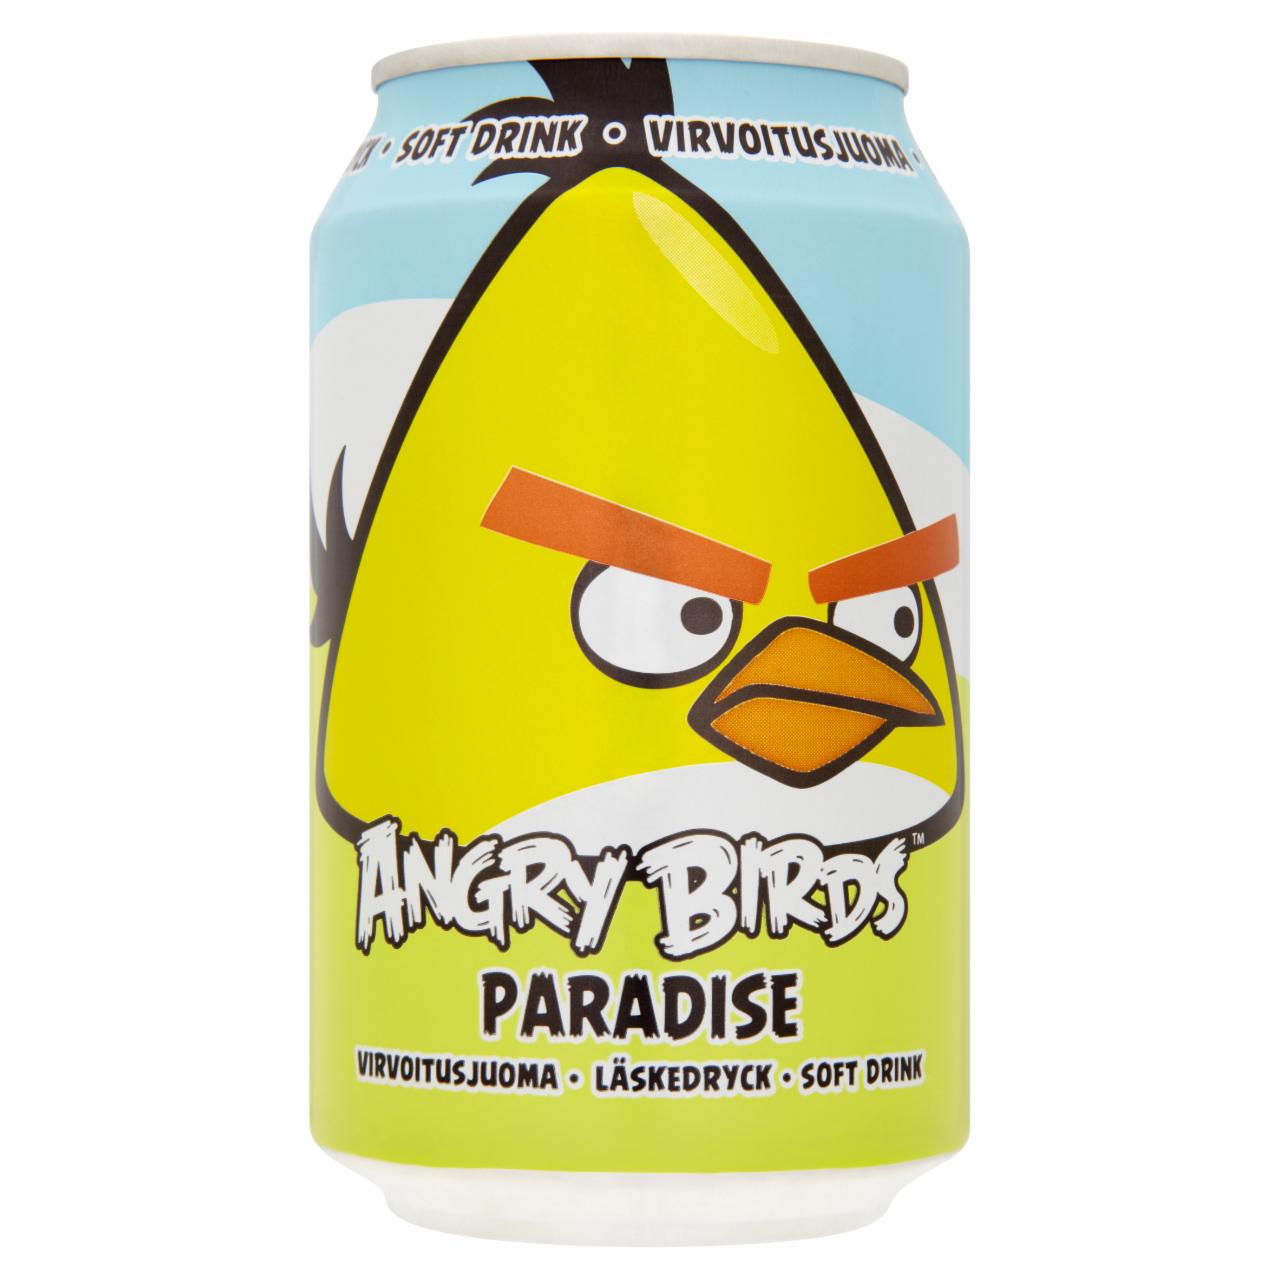 Képek - Angry Birds Paradise mandarin- és ananászízű szénsavas üdítőital 0,33 l